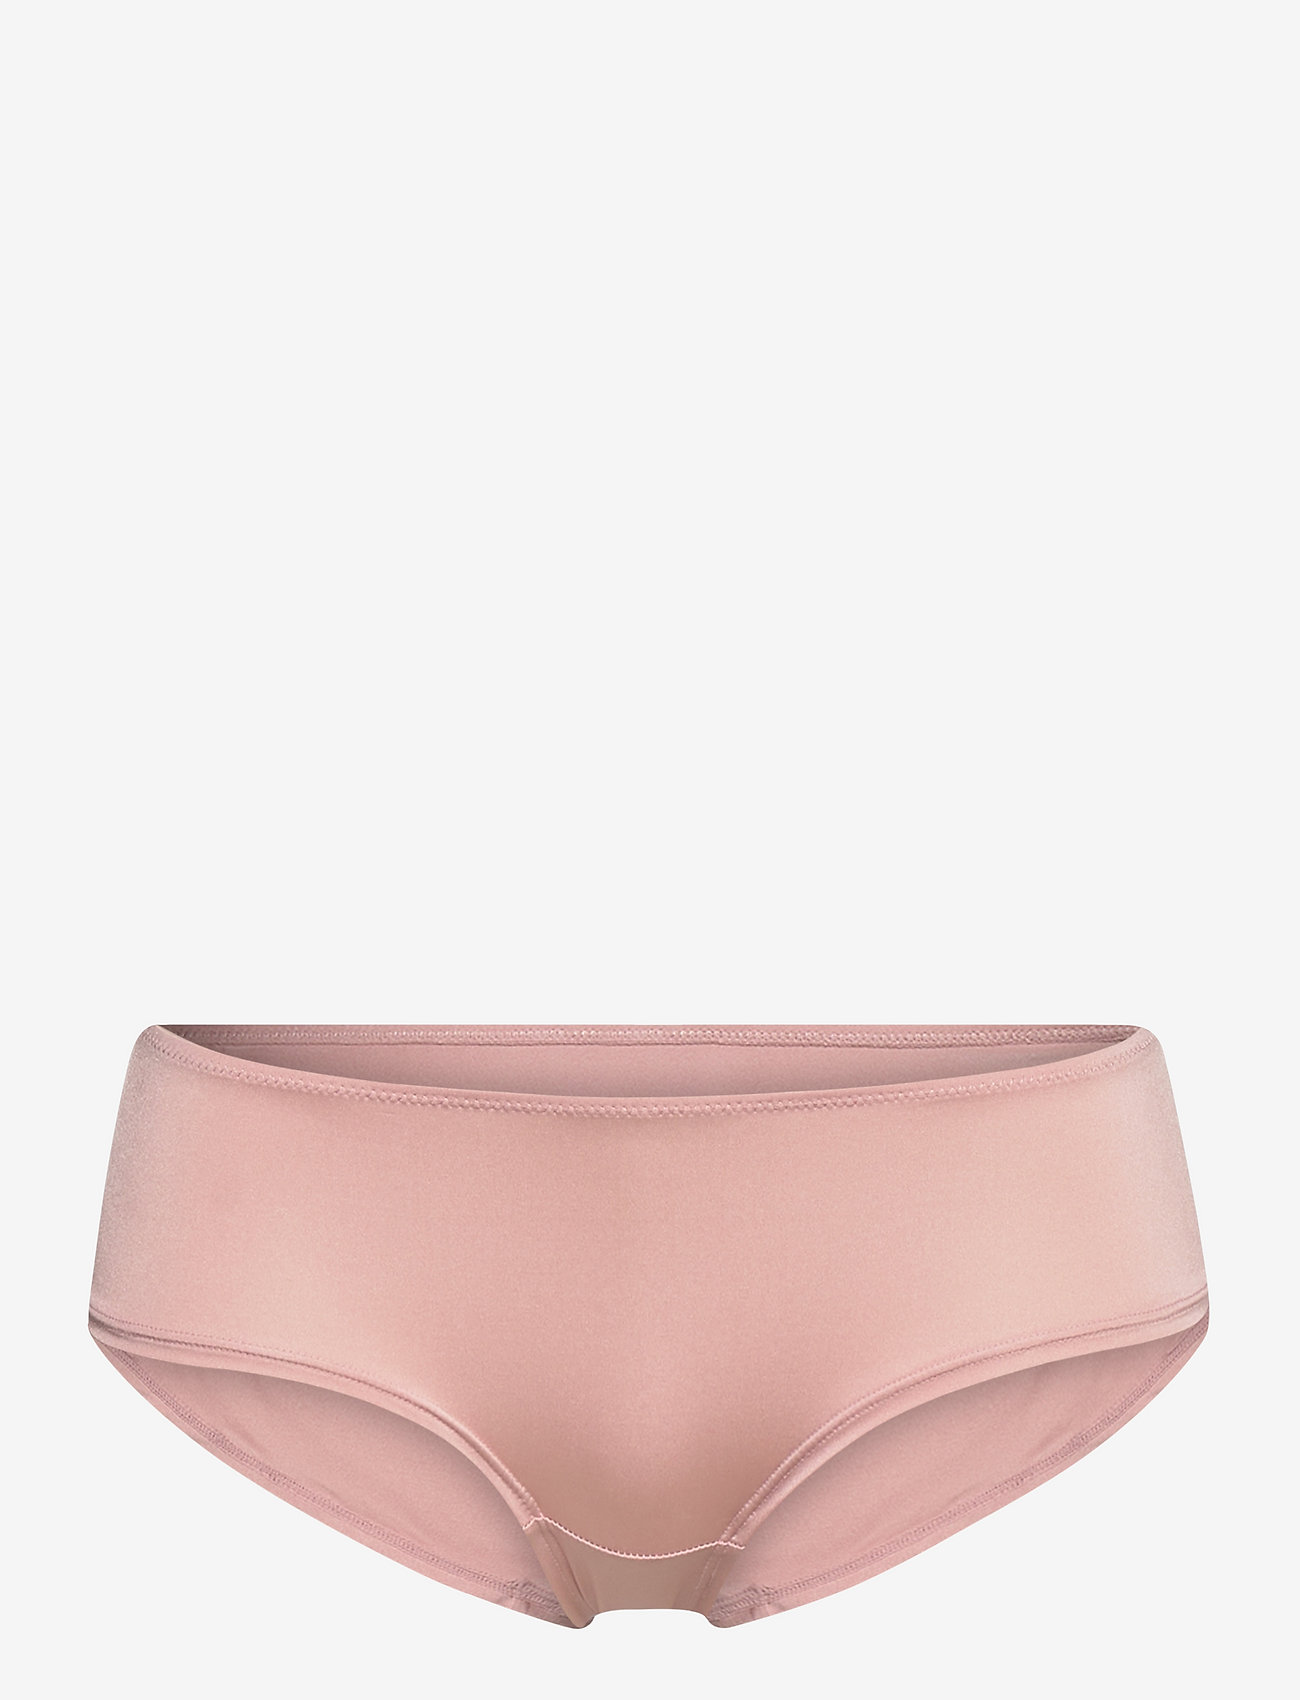 Esprit Bodywear Women - Recycled: microfibre hipster shorts - die niedrigsten preise - old pink - 0